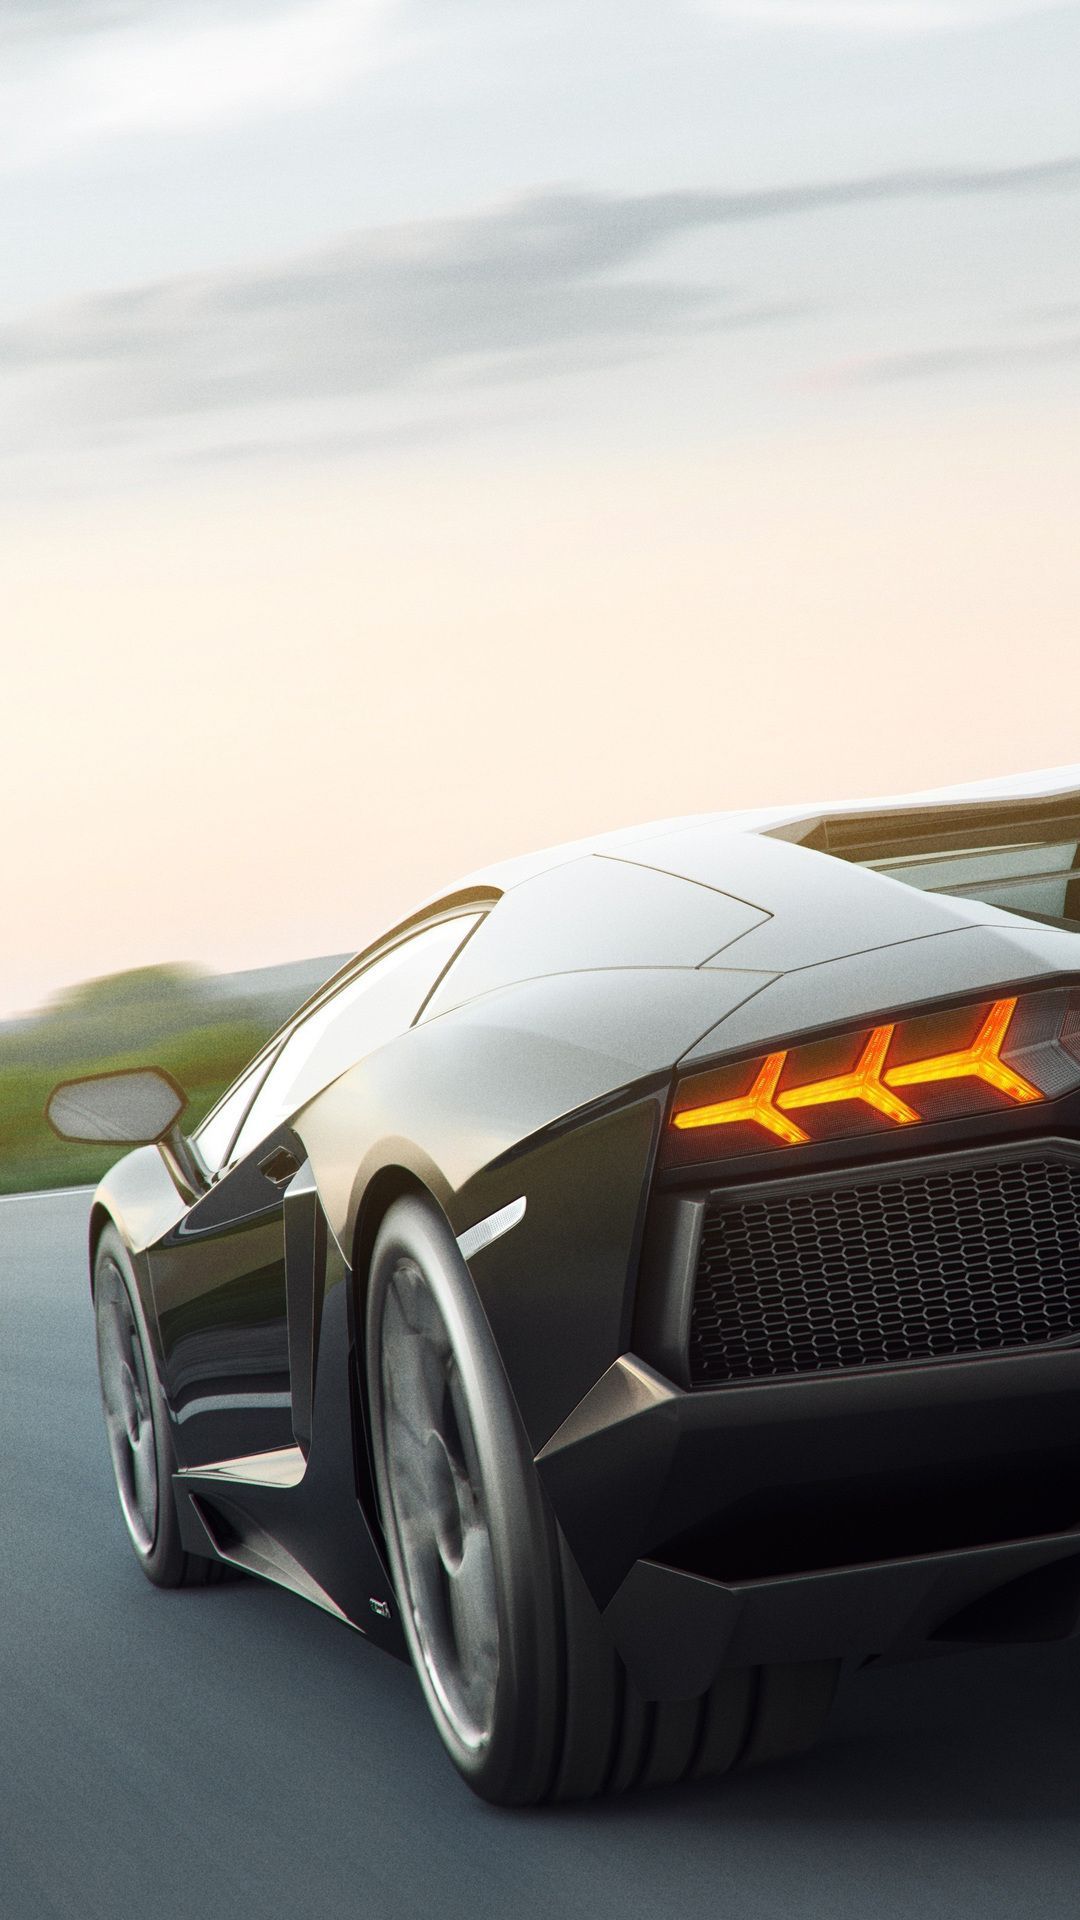 Cars #Black Lamborghini #wallpaper HD 4k background for android :). Black car wallpaper, Android wallpaper cars, Lamborghini wallpaper iphone